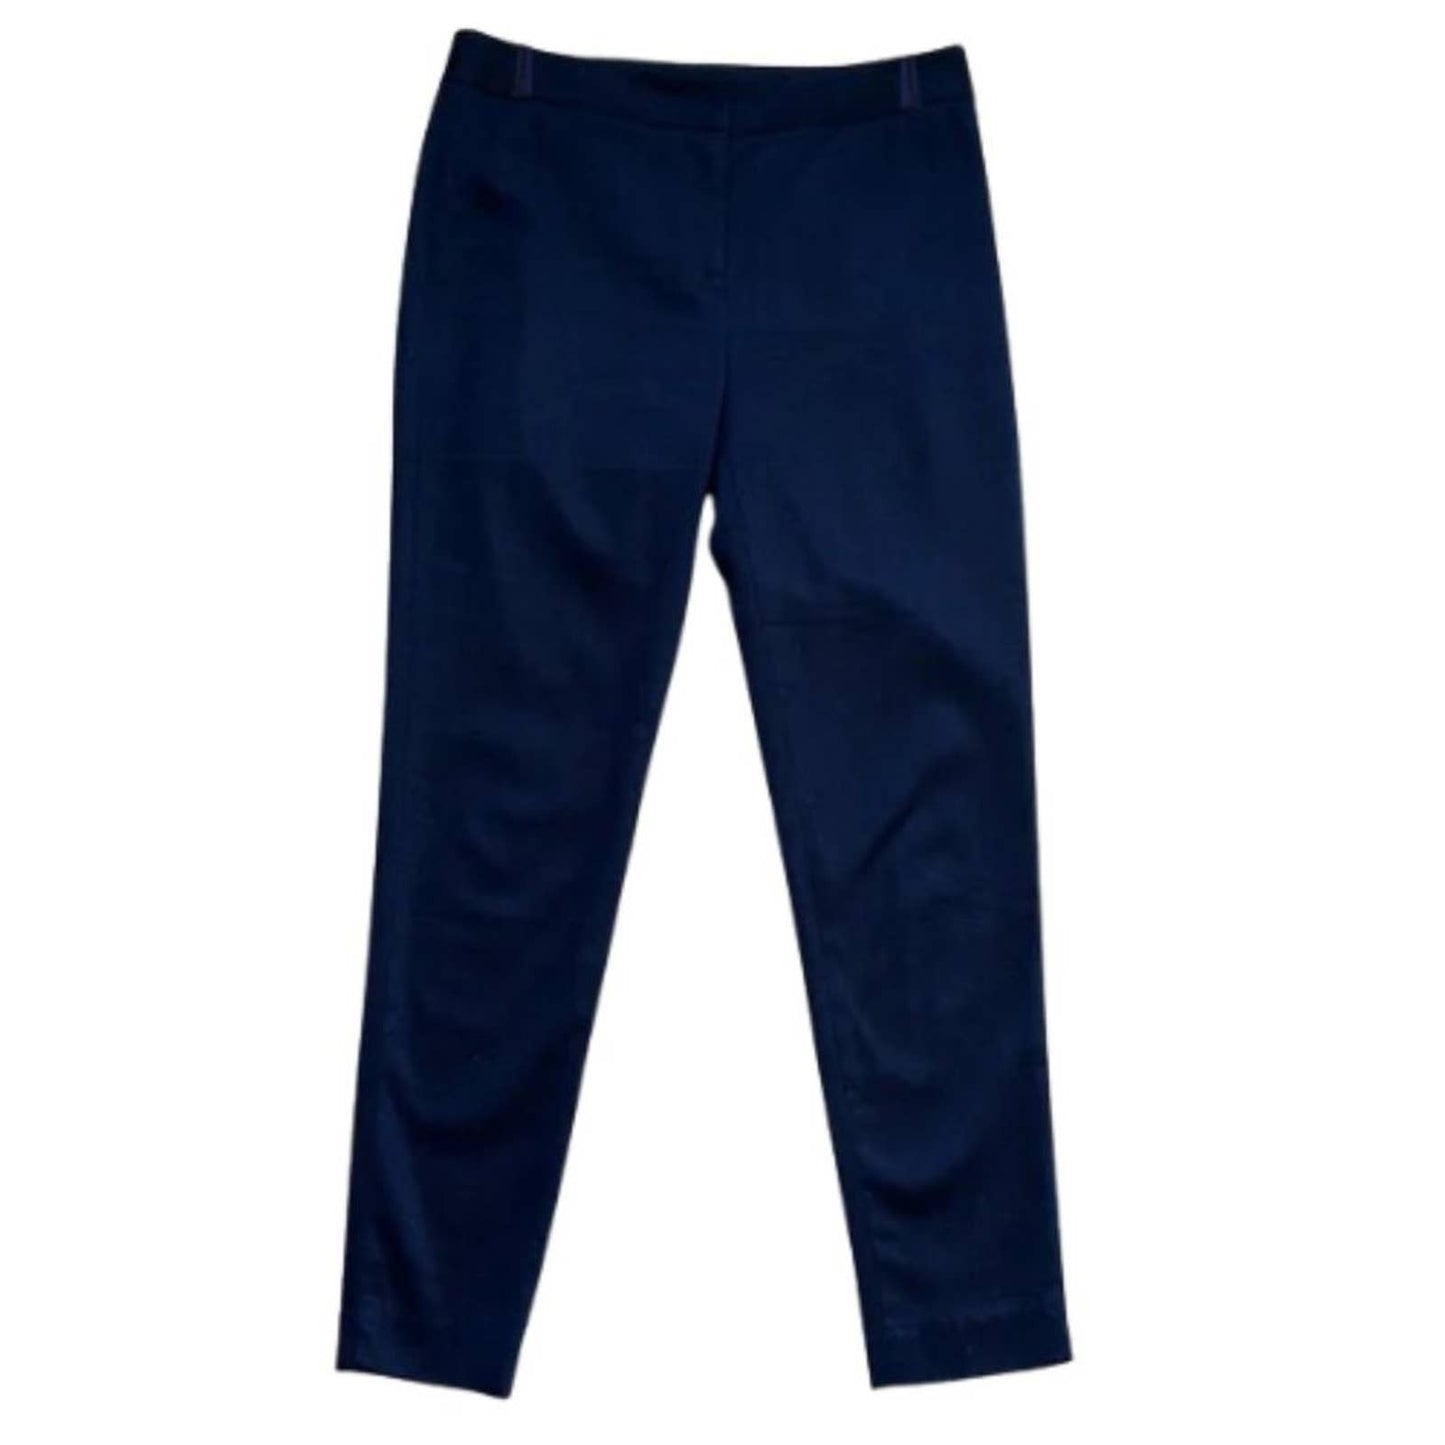 J. Mclaughlin Vintage Wash Navy Blue Cigarette Pants EUC Size 4